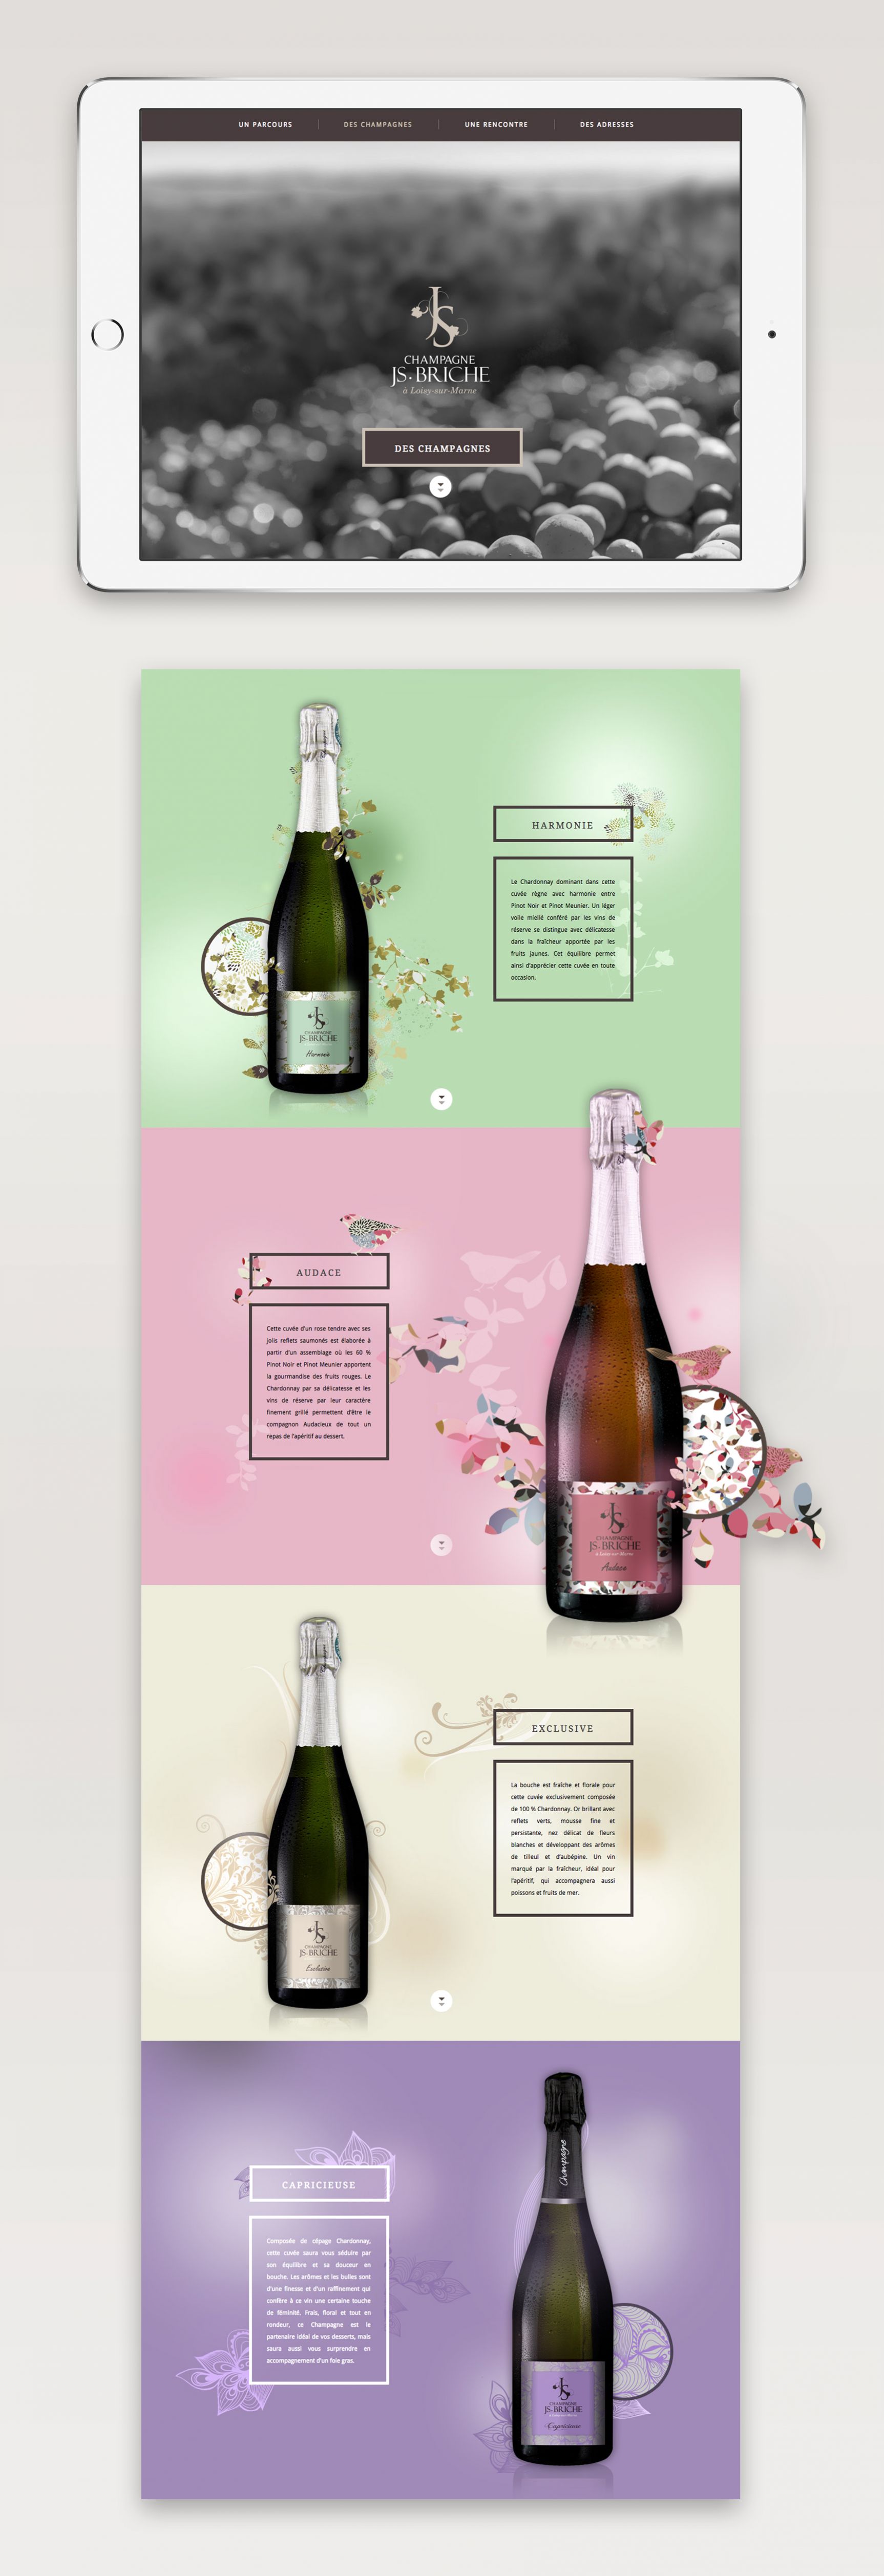 Champagne JS Briche Site internet